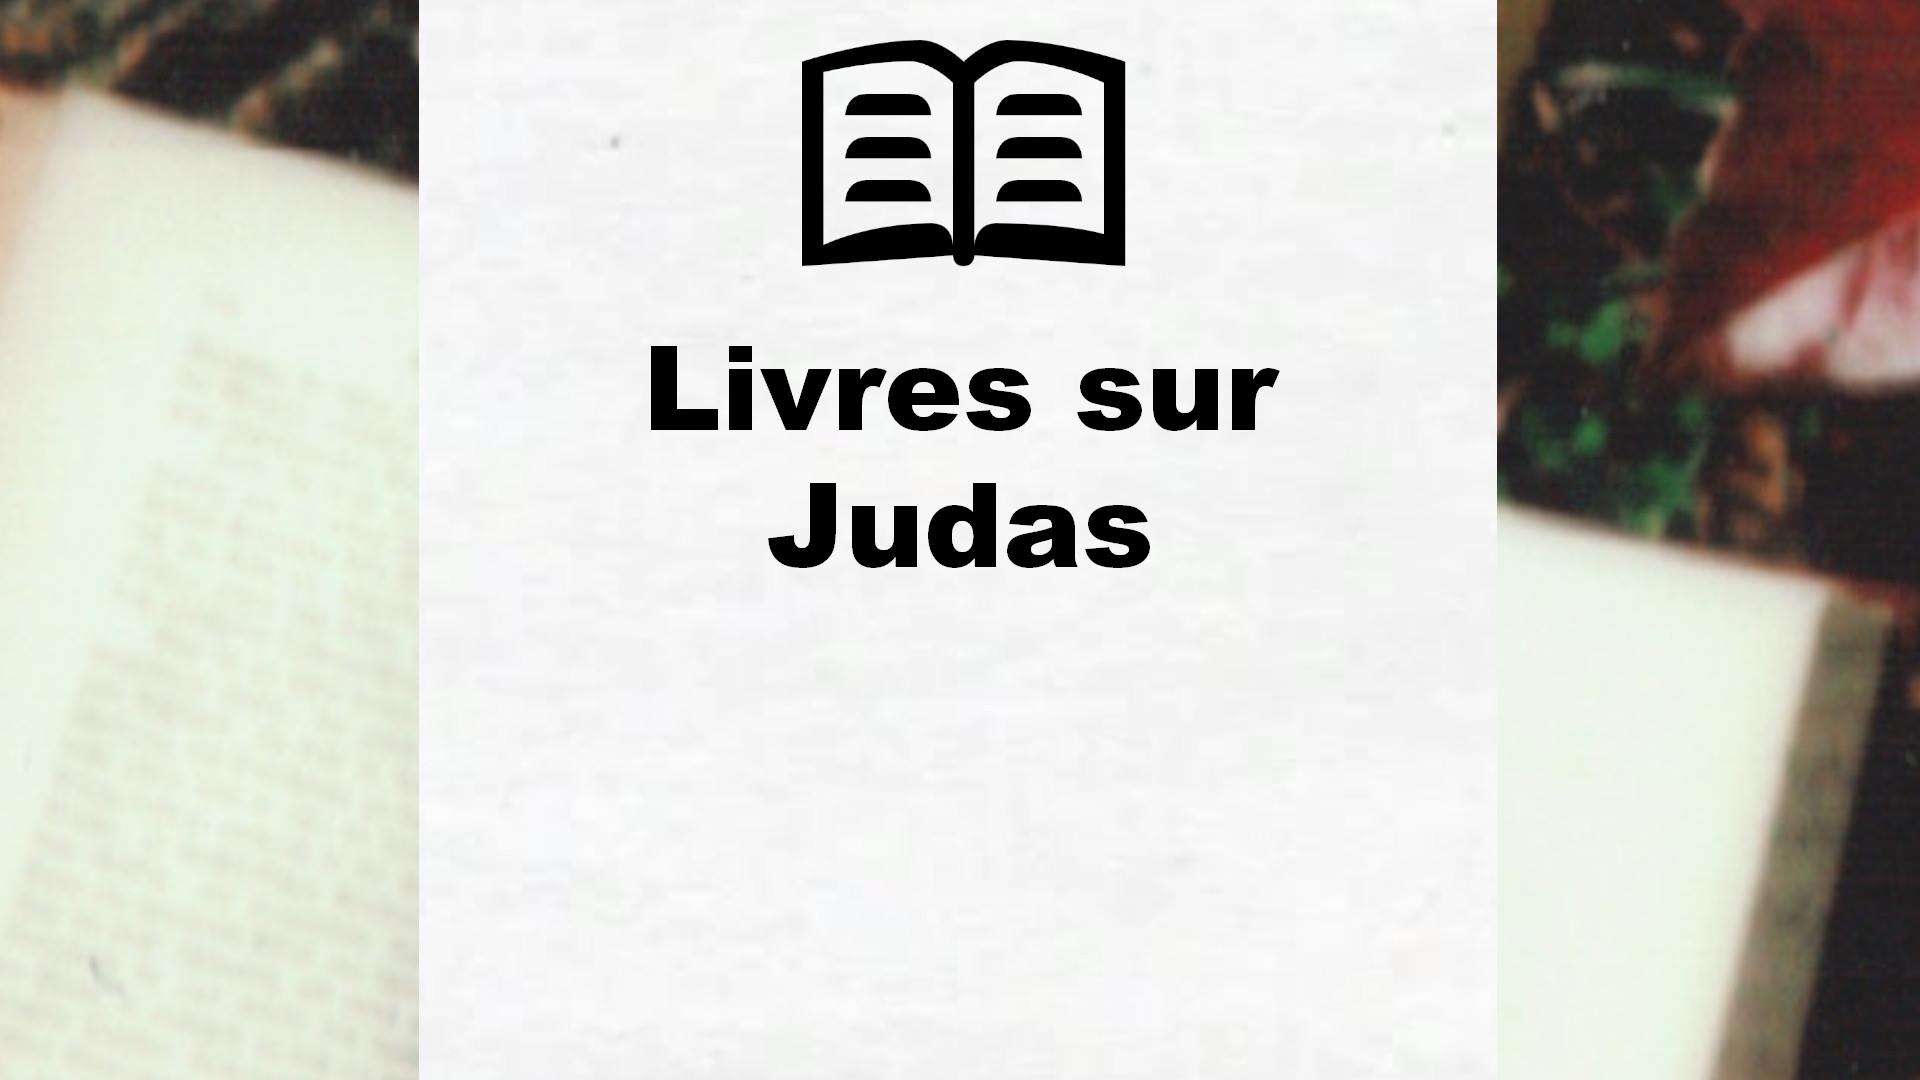 Livres sur Judas